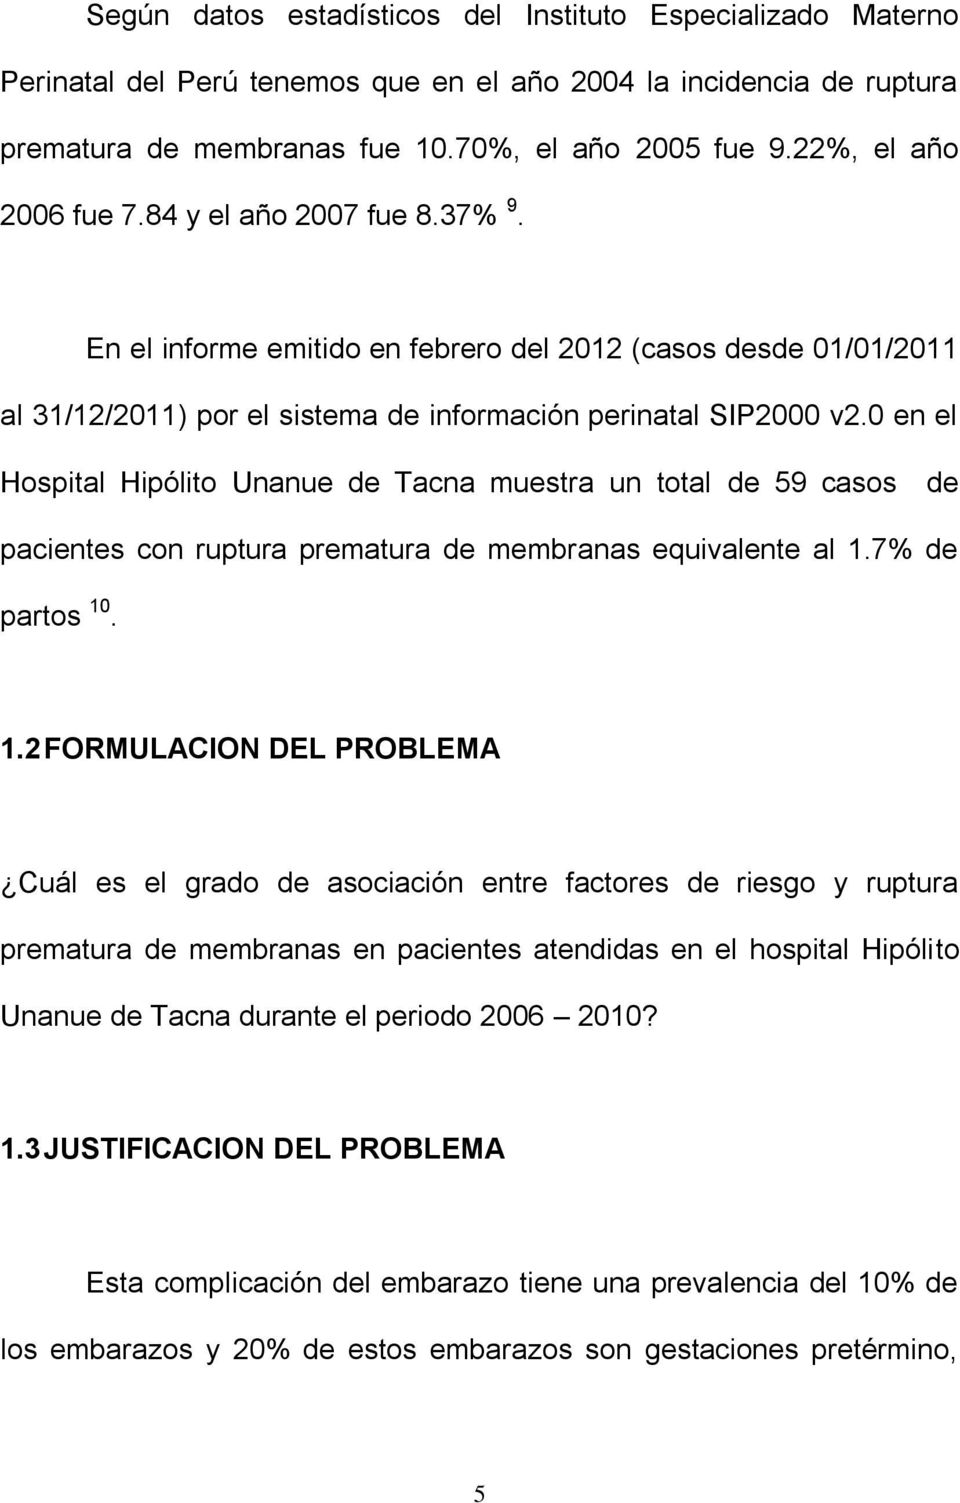 0 en el Hospital Hipólito Unanue de Tacna muestra un total de 59 casos de pacientes con ruptura prematura de membranas equivalente al 1.